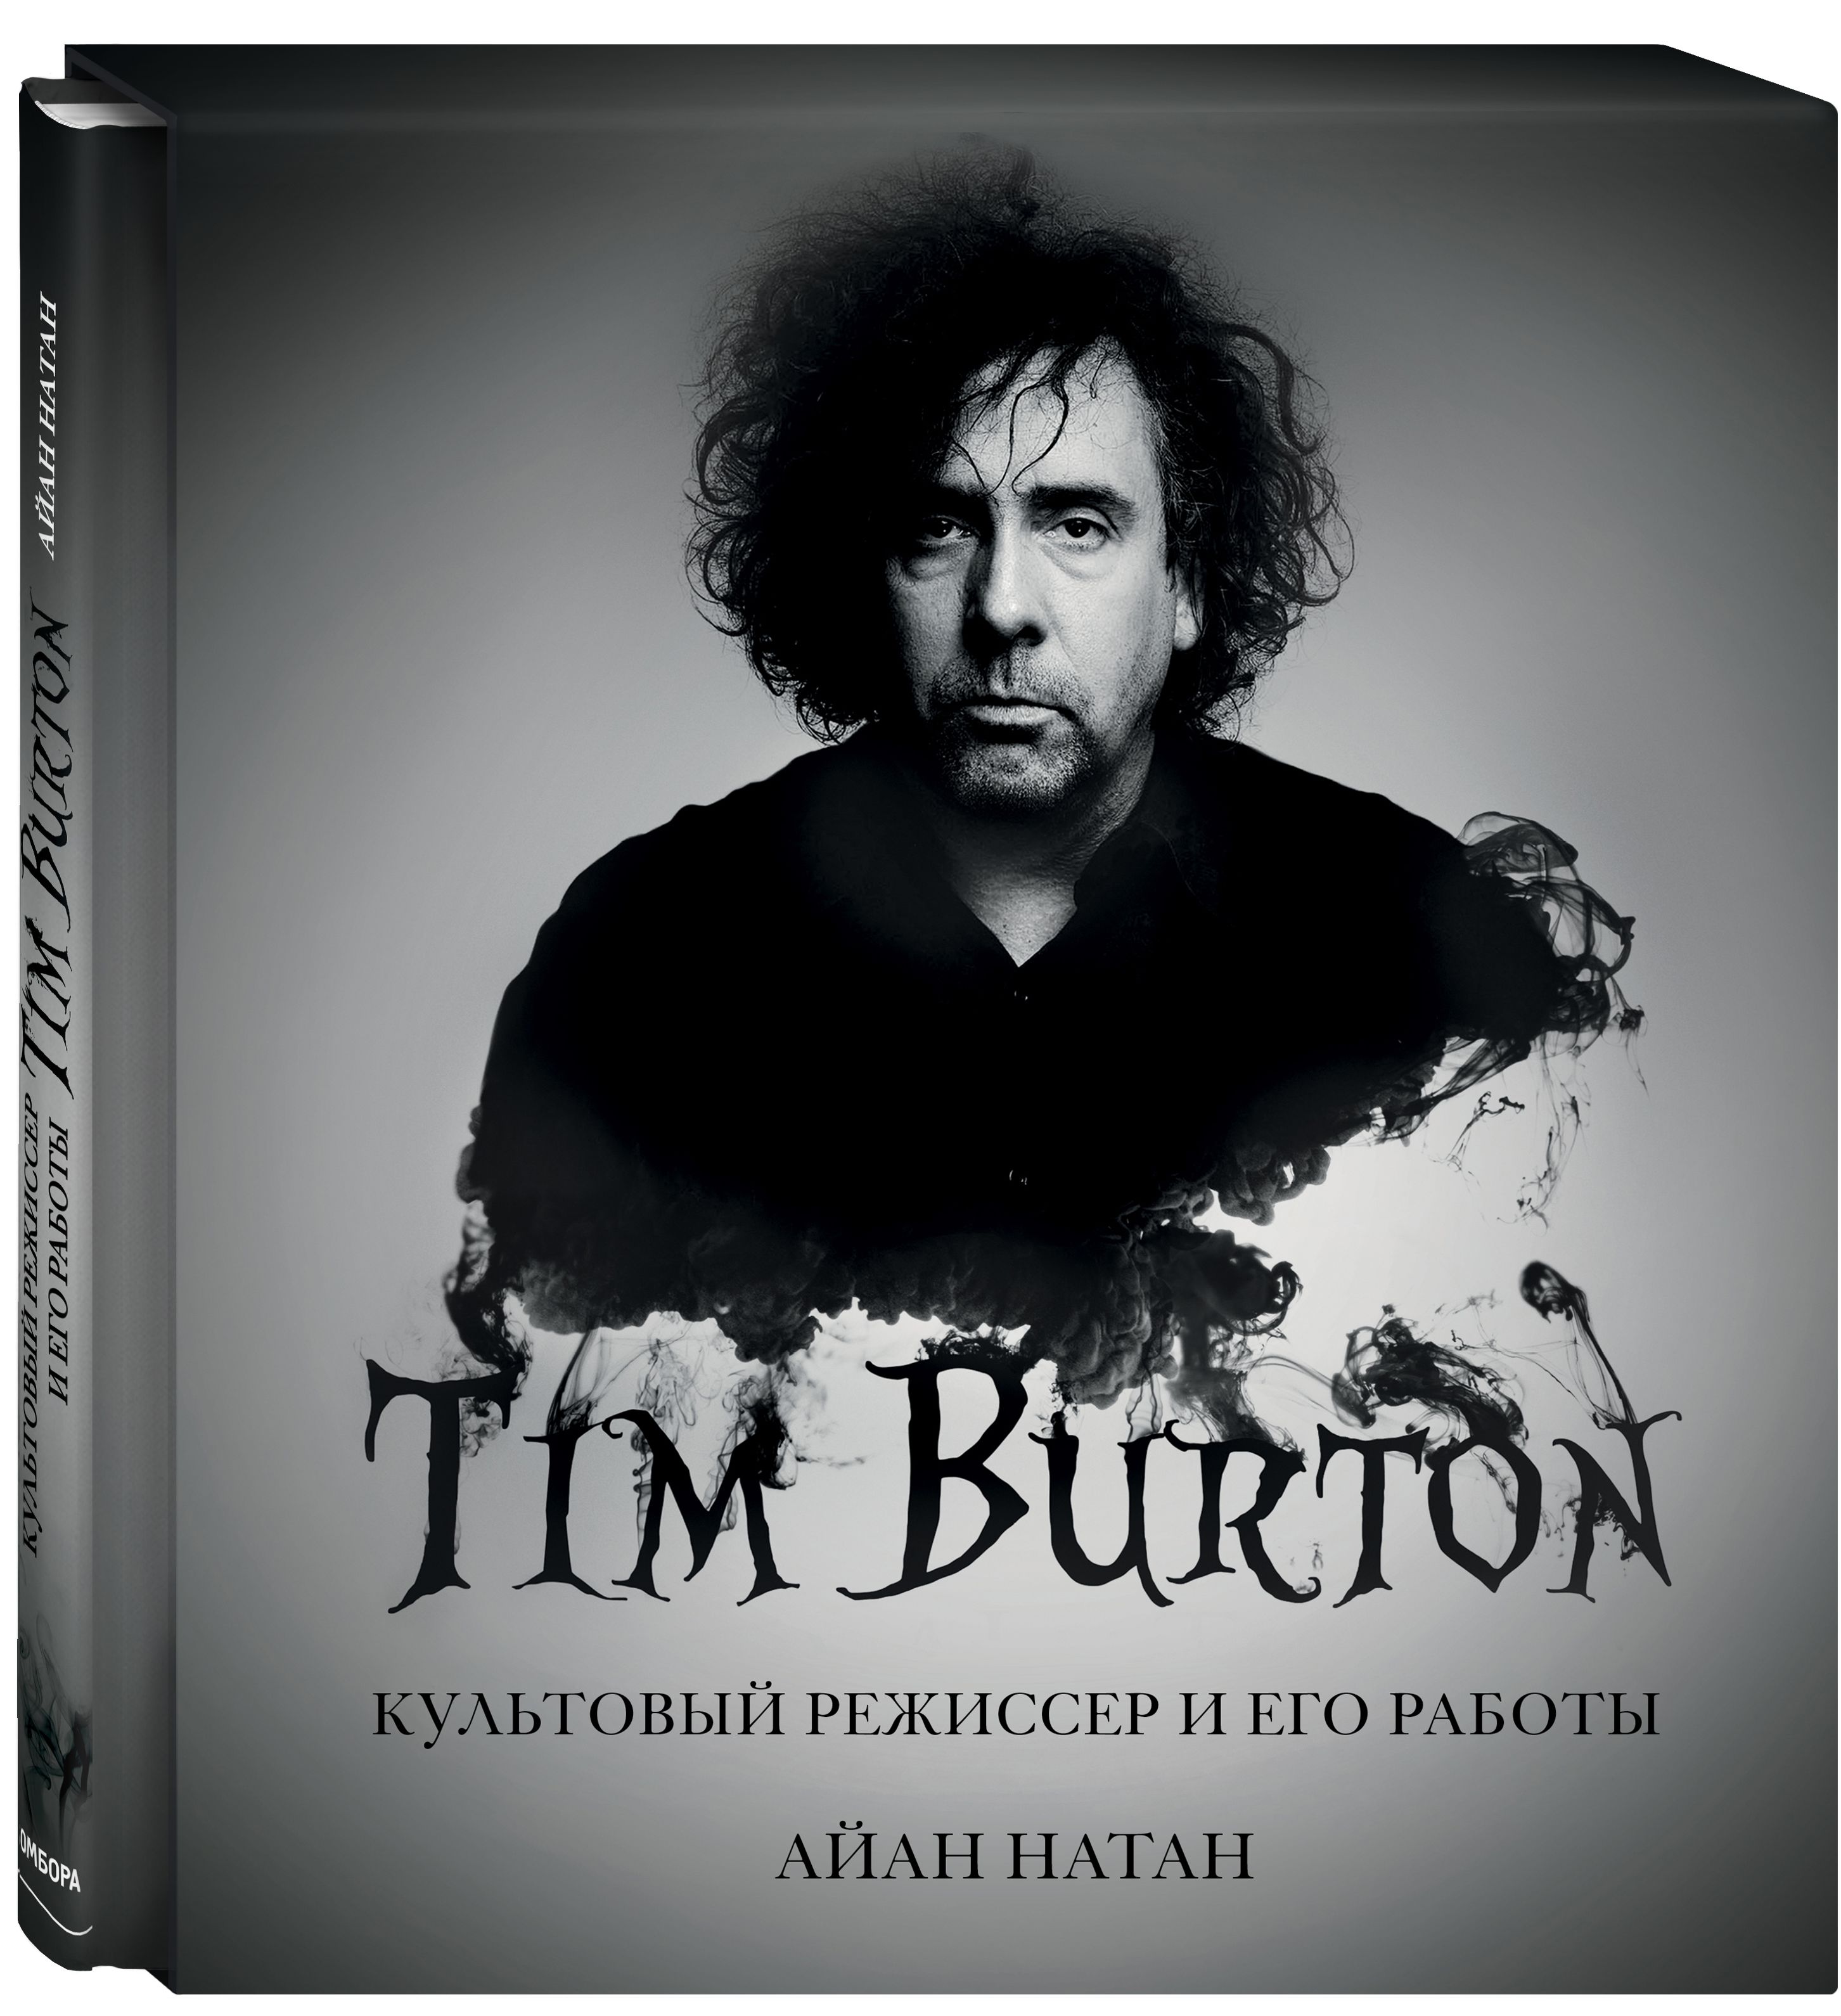 Тим Бёртон: Культовый режиссер и его работы. Дополненное издание от 1С Интерес